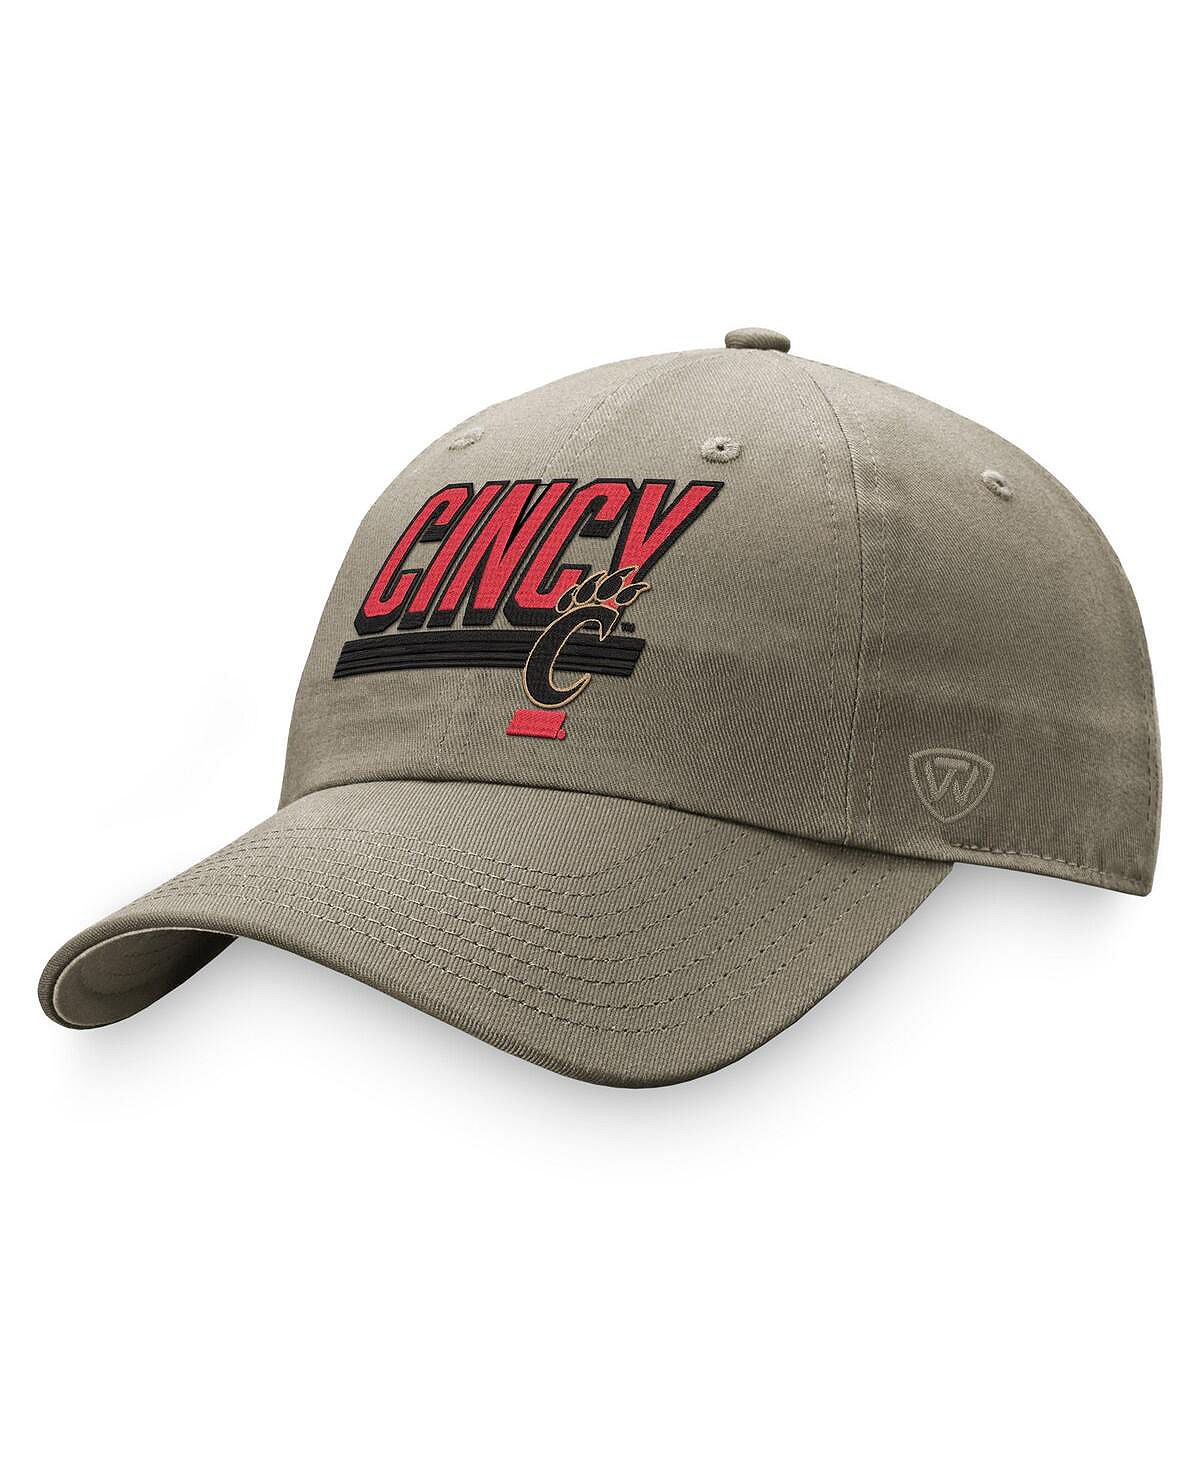 Мужская регулируемая шляпа цвета хаки Cincinnati Bearcats Slice Top of the World